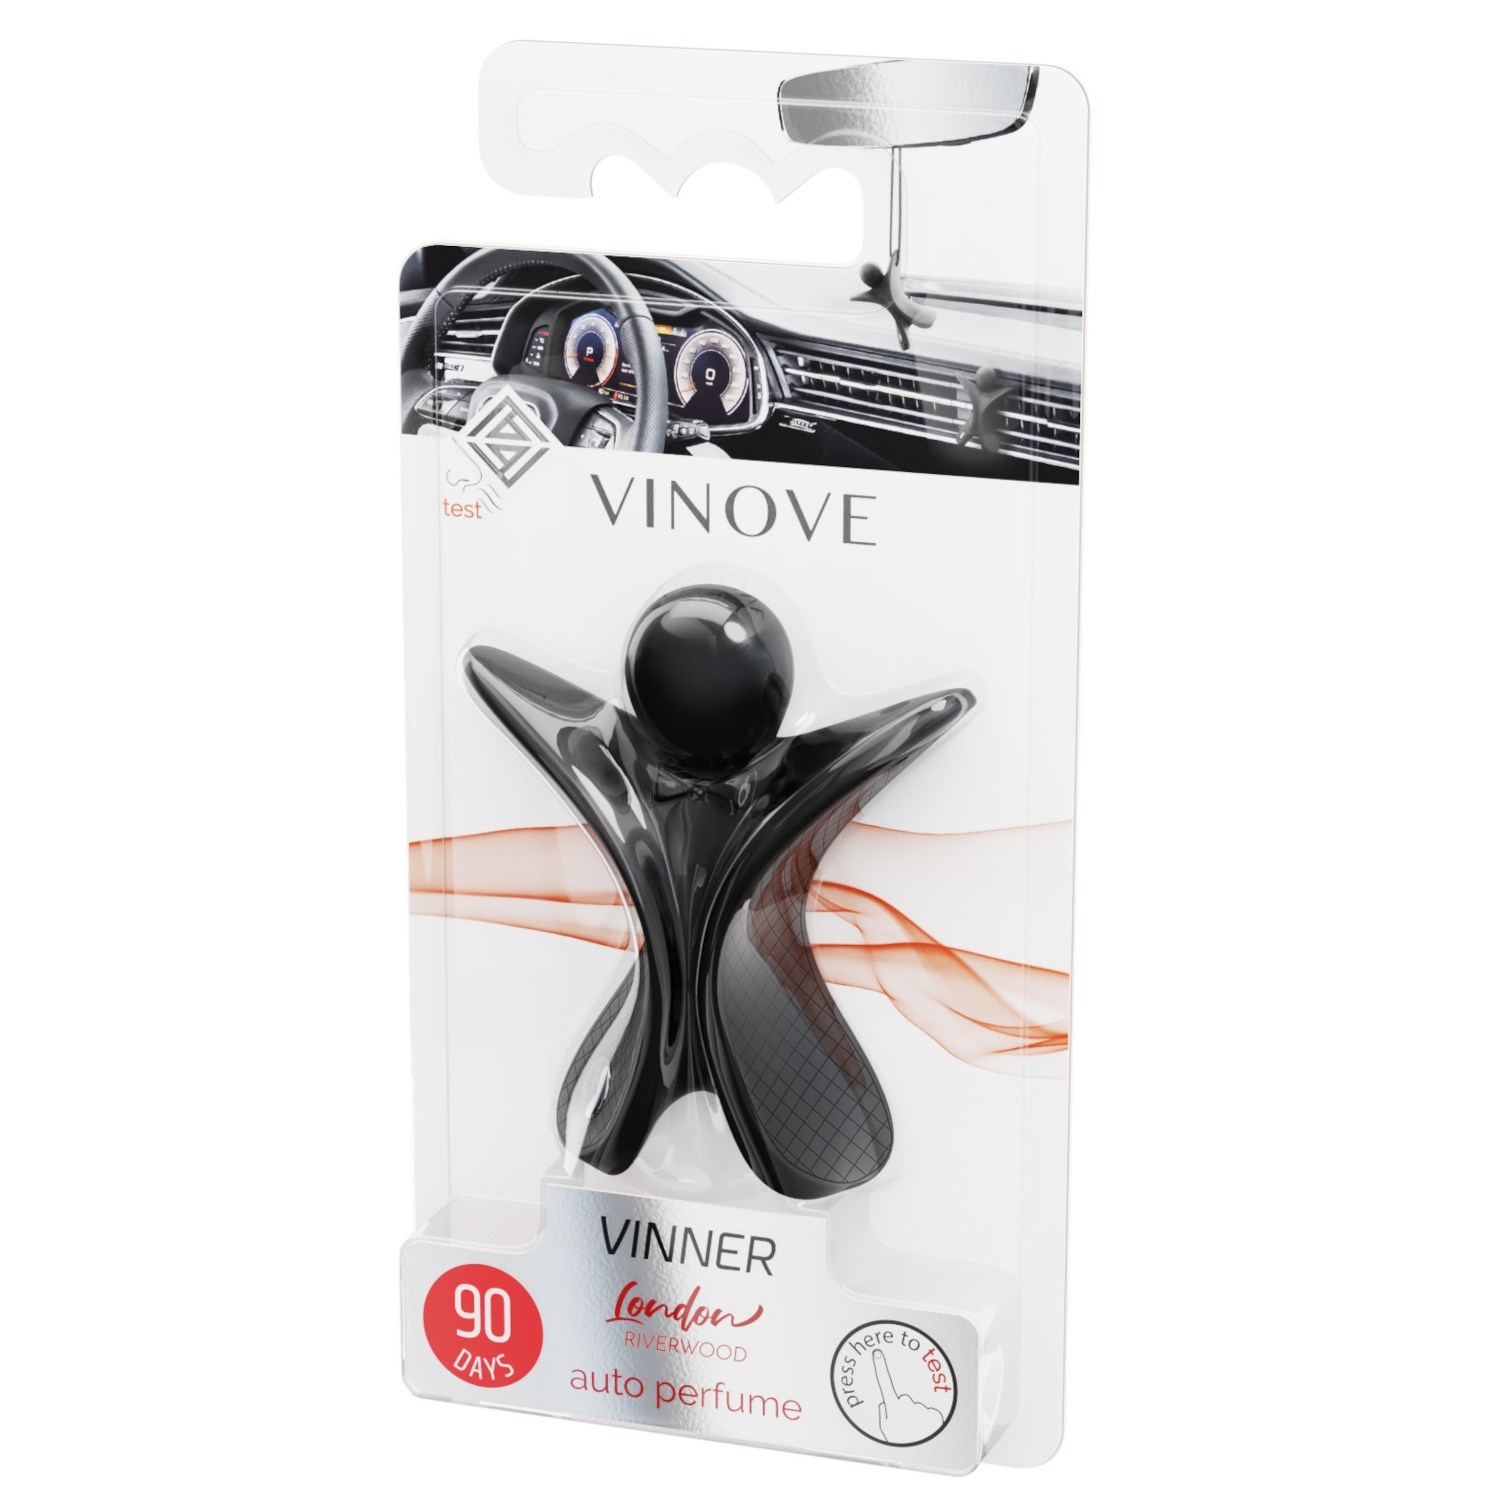 Image of Vinove Vinner London - zapach samochodowy, ekskluzywna nuta zapachowa